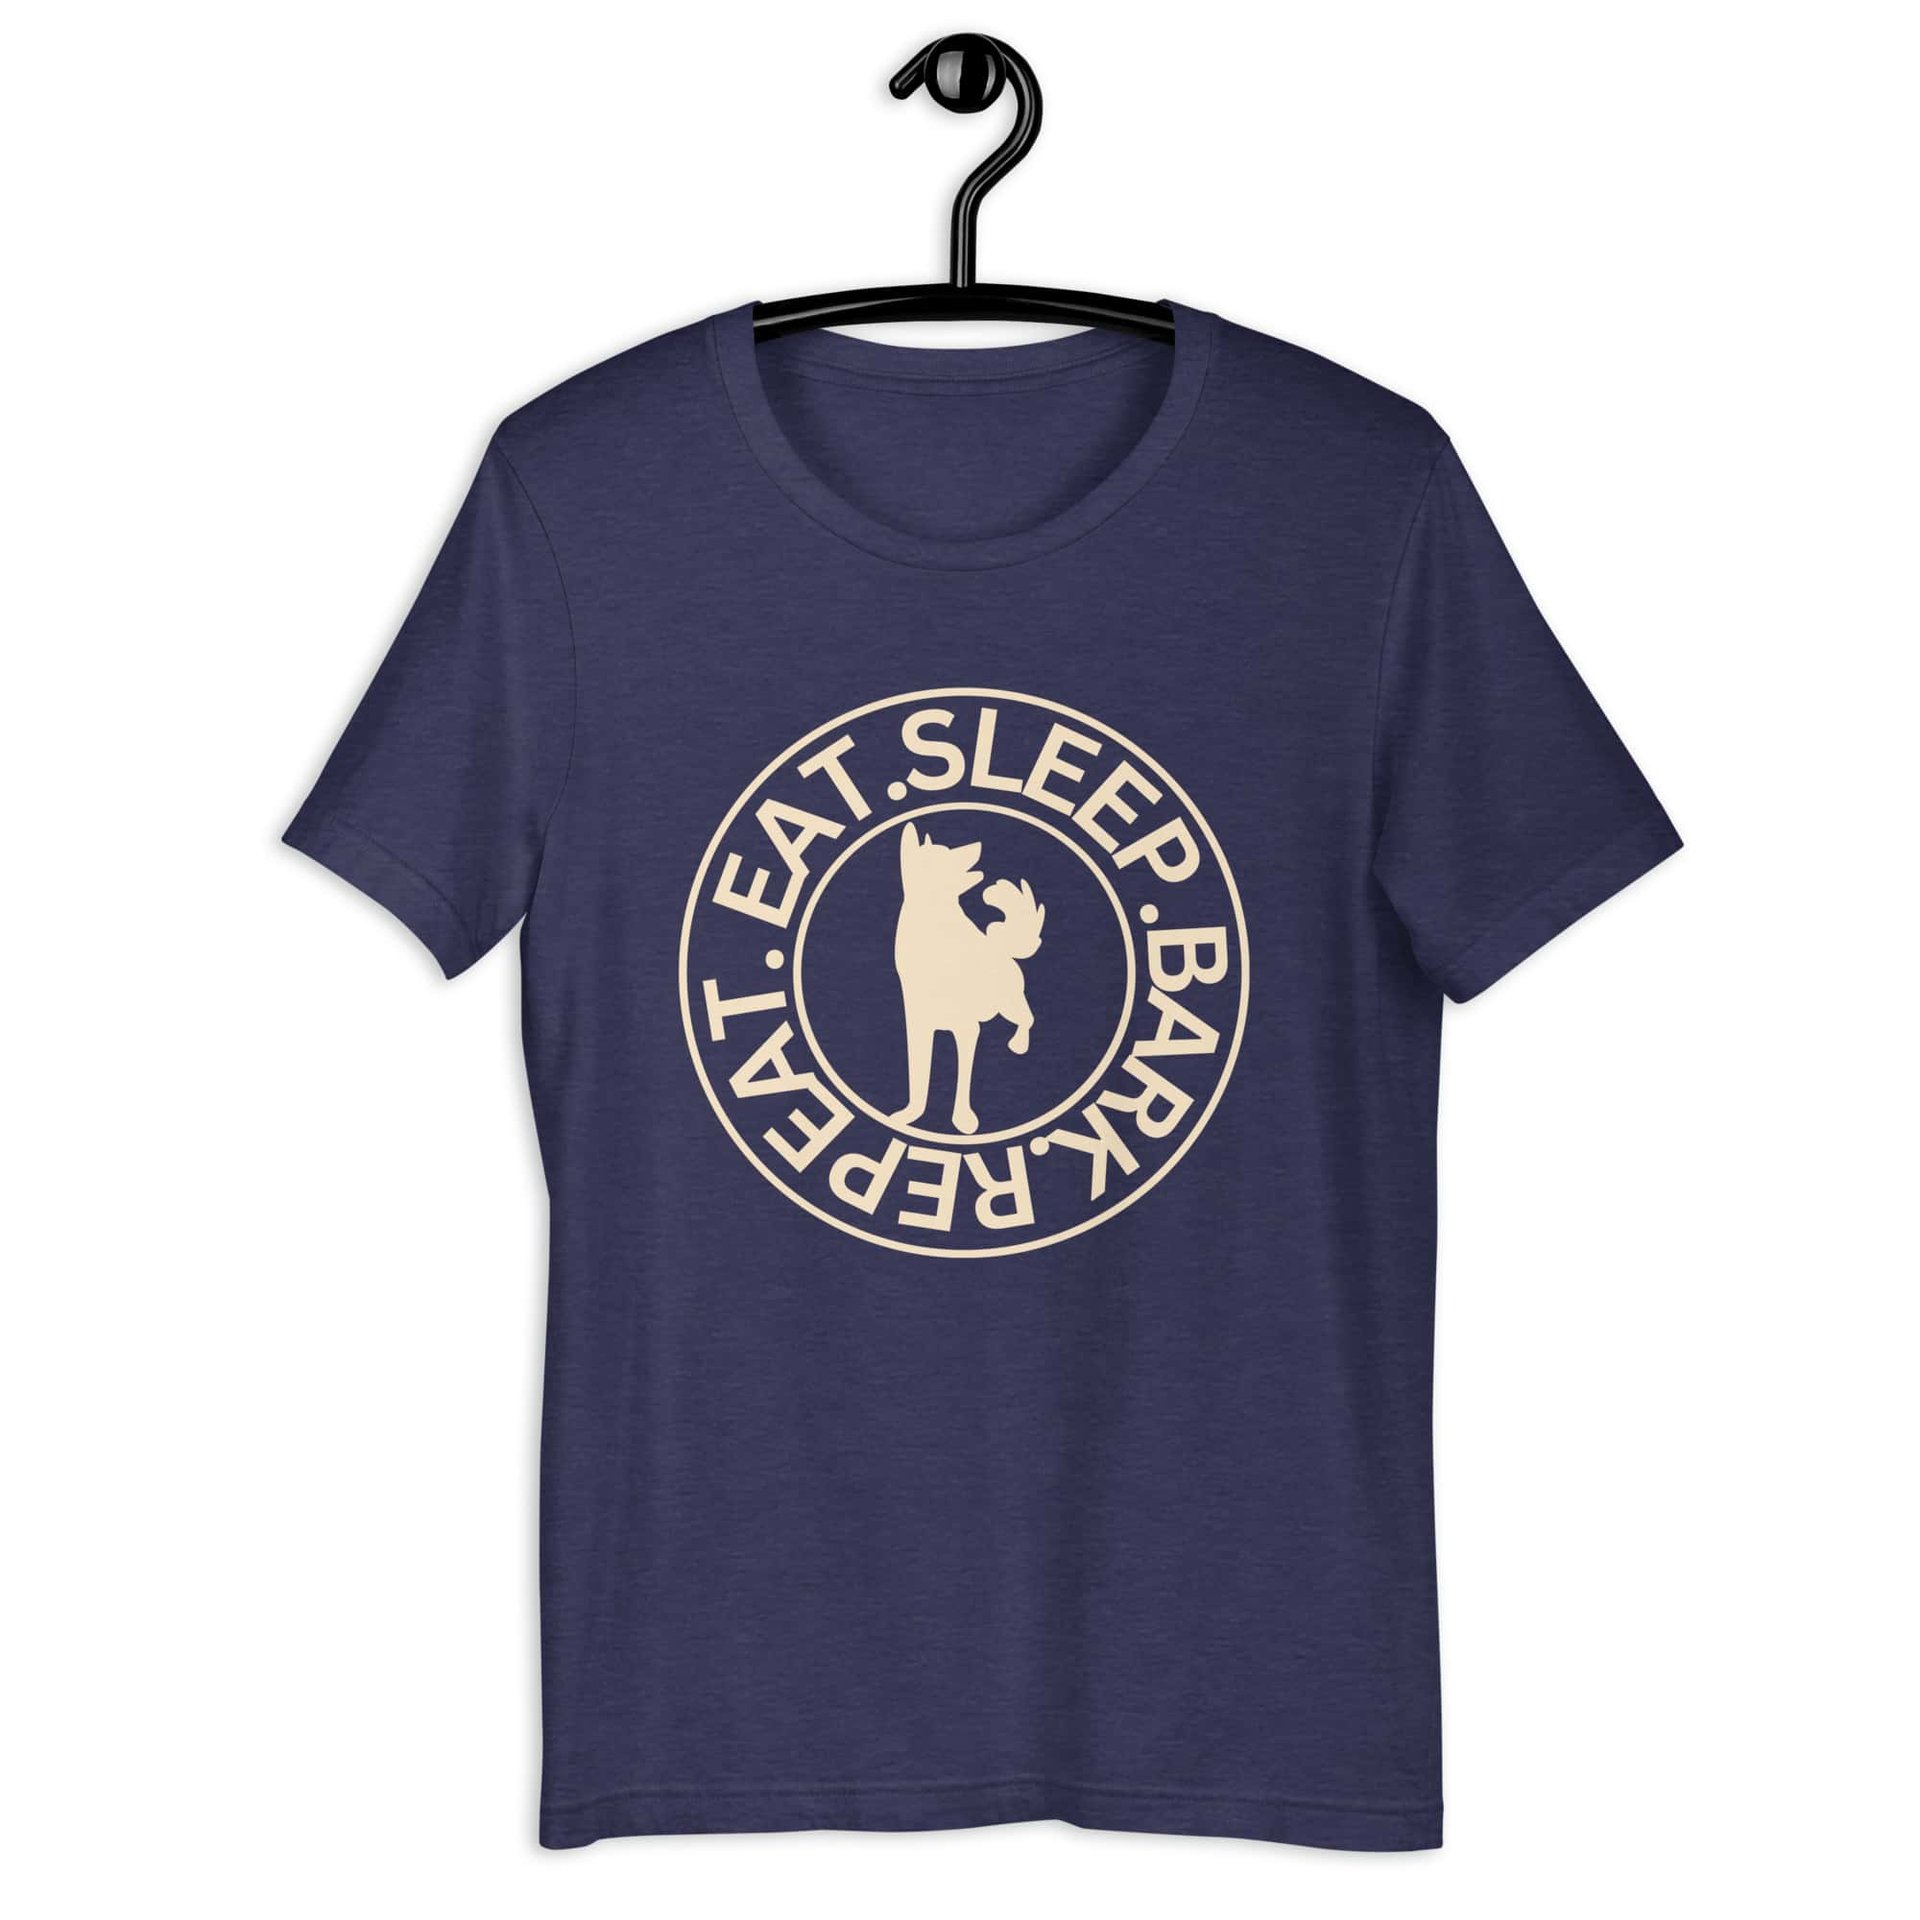 Eat Sleep Bark Repeat Shepherd Unisex T-Shirt. Heather Midnight Navy